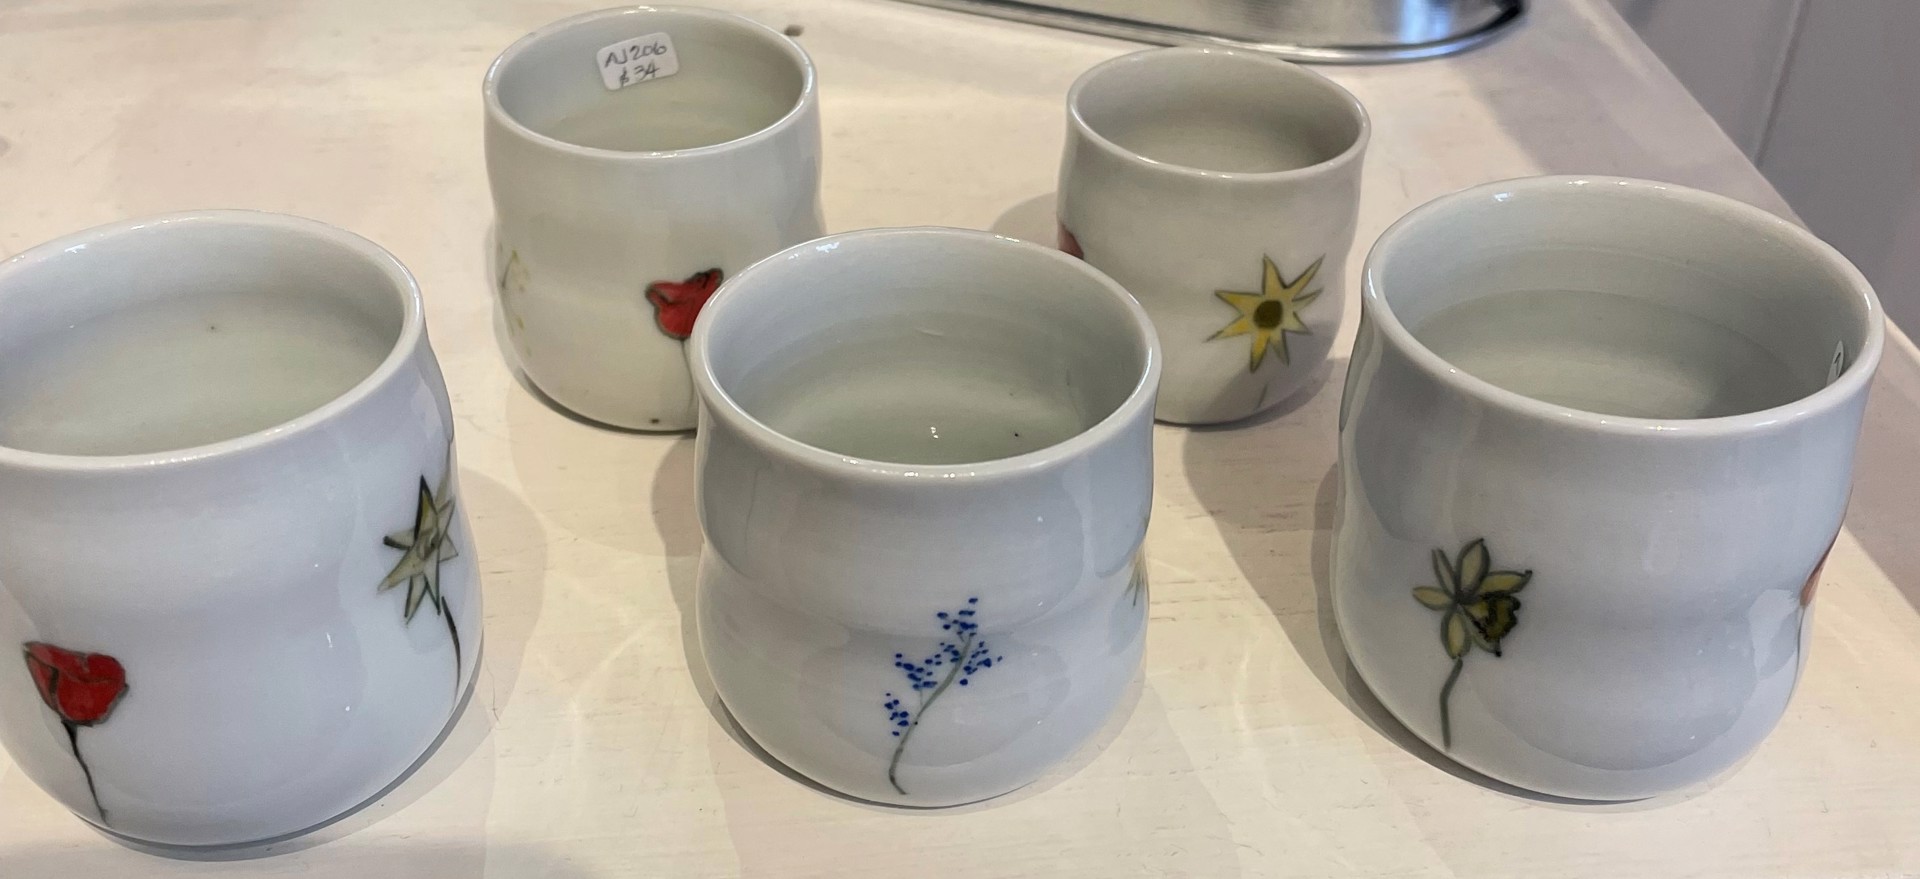 Tea cups by Ann John